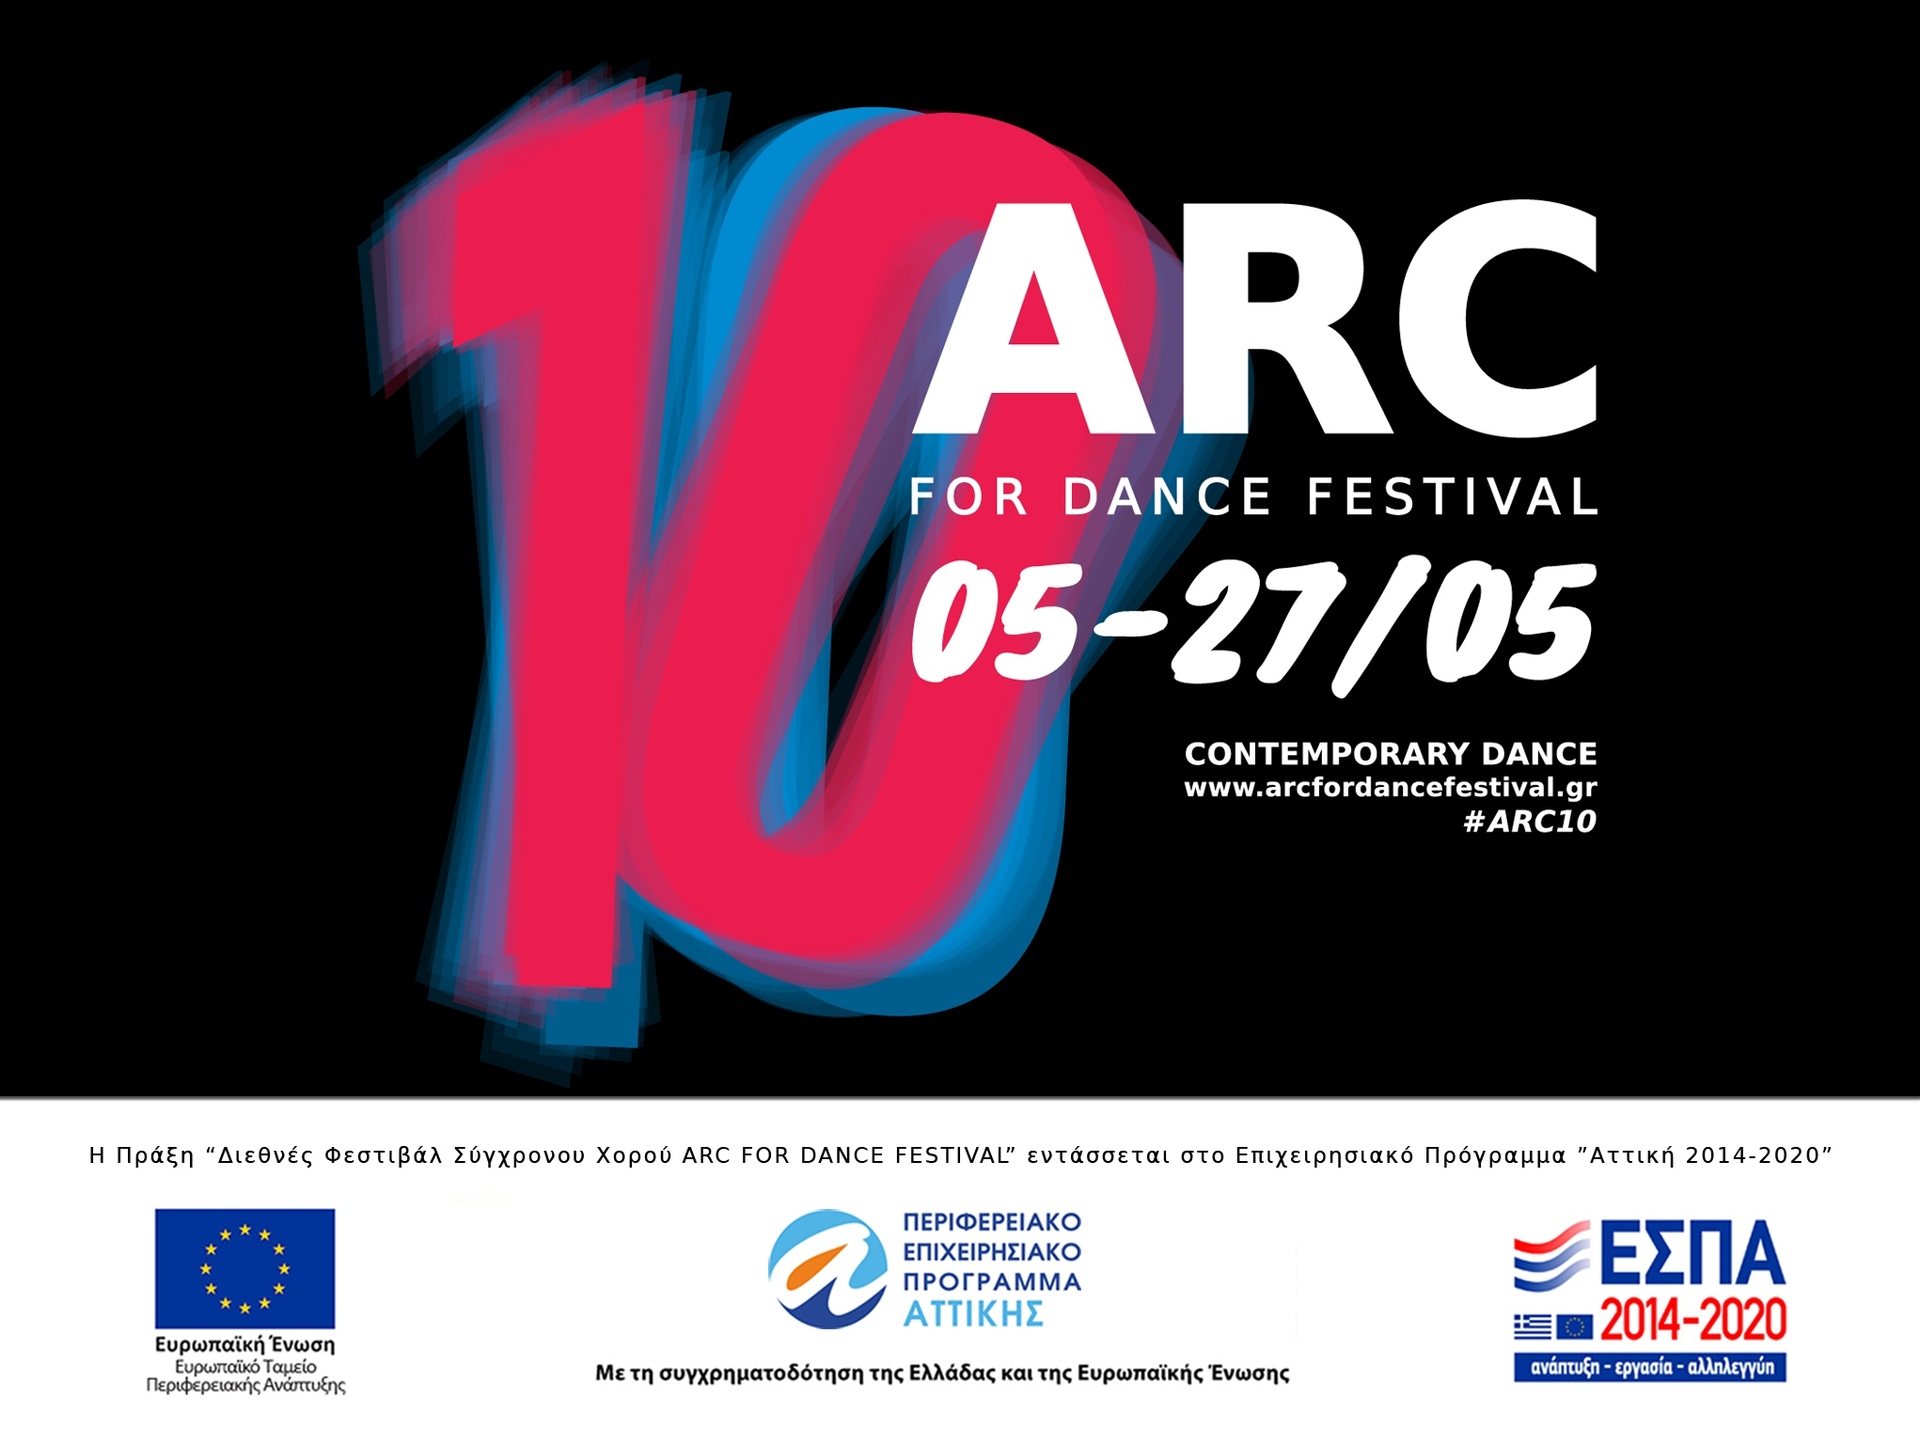 Πριν από 10 χρόνια γεννήθηκε το Διεθνές Φεστιβάλ Σύγχρονου Χορού ARC FOR DANCE FESTIVAL